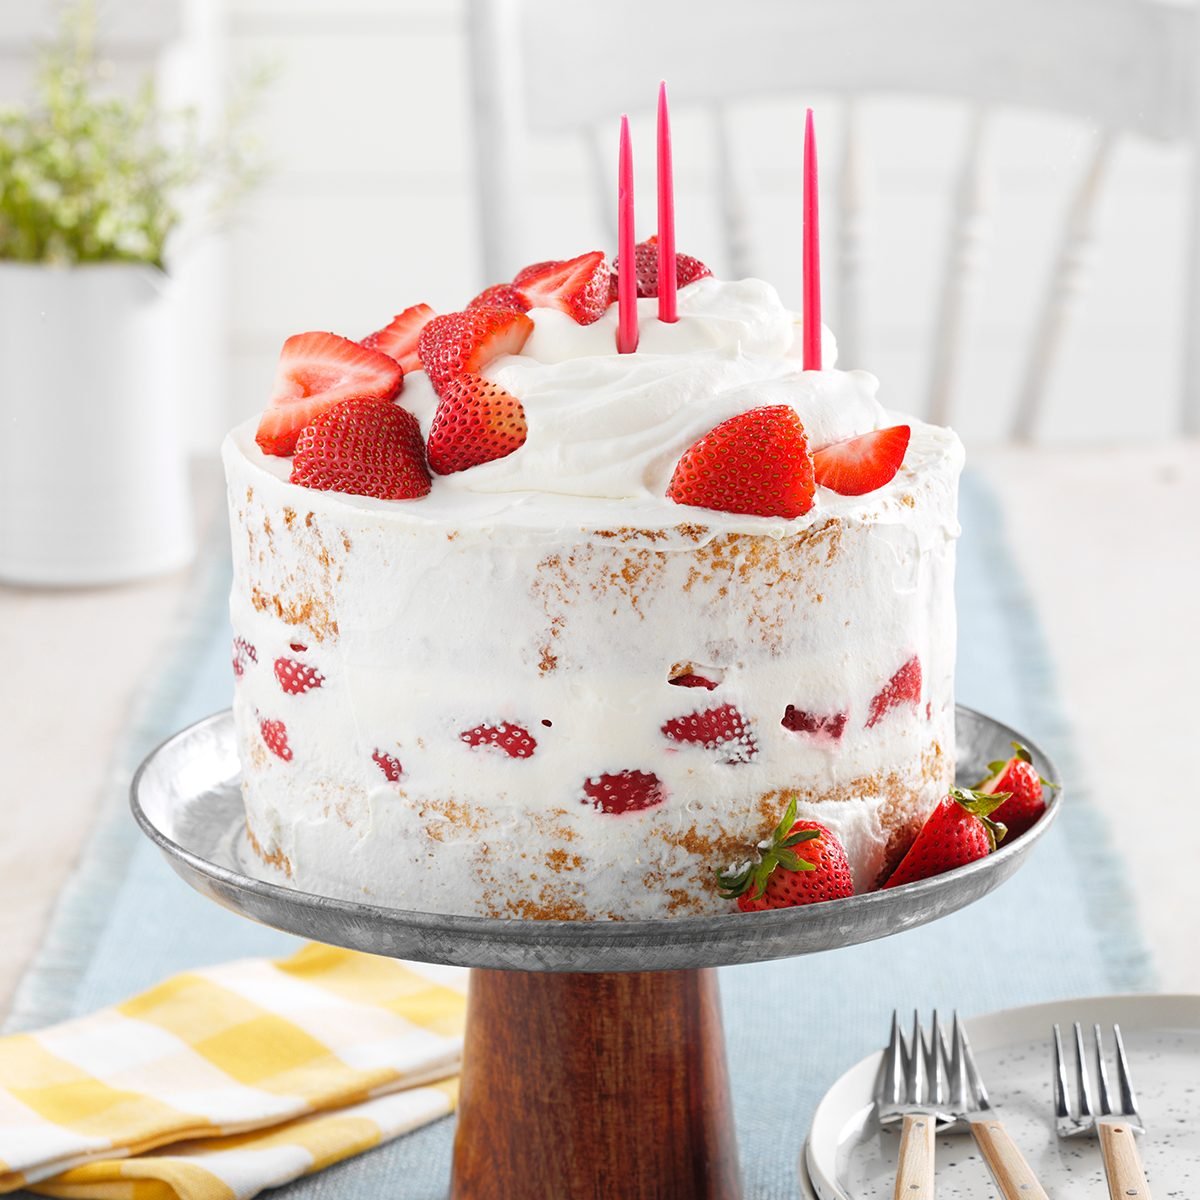 33 Birthday Cake Ideas & Homemade Recipes